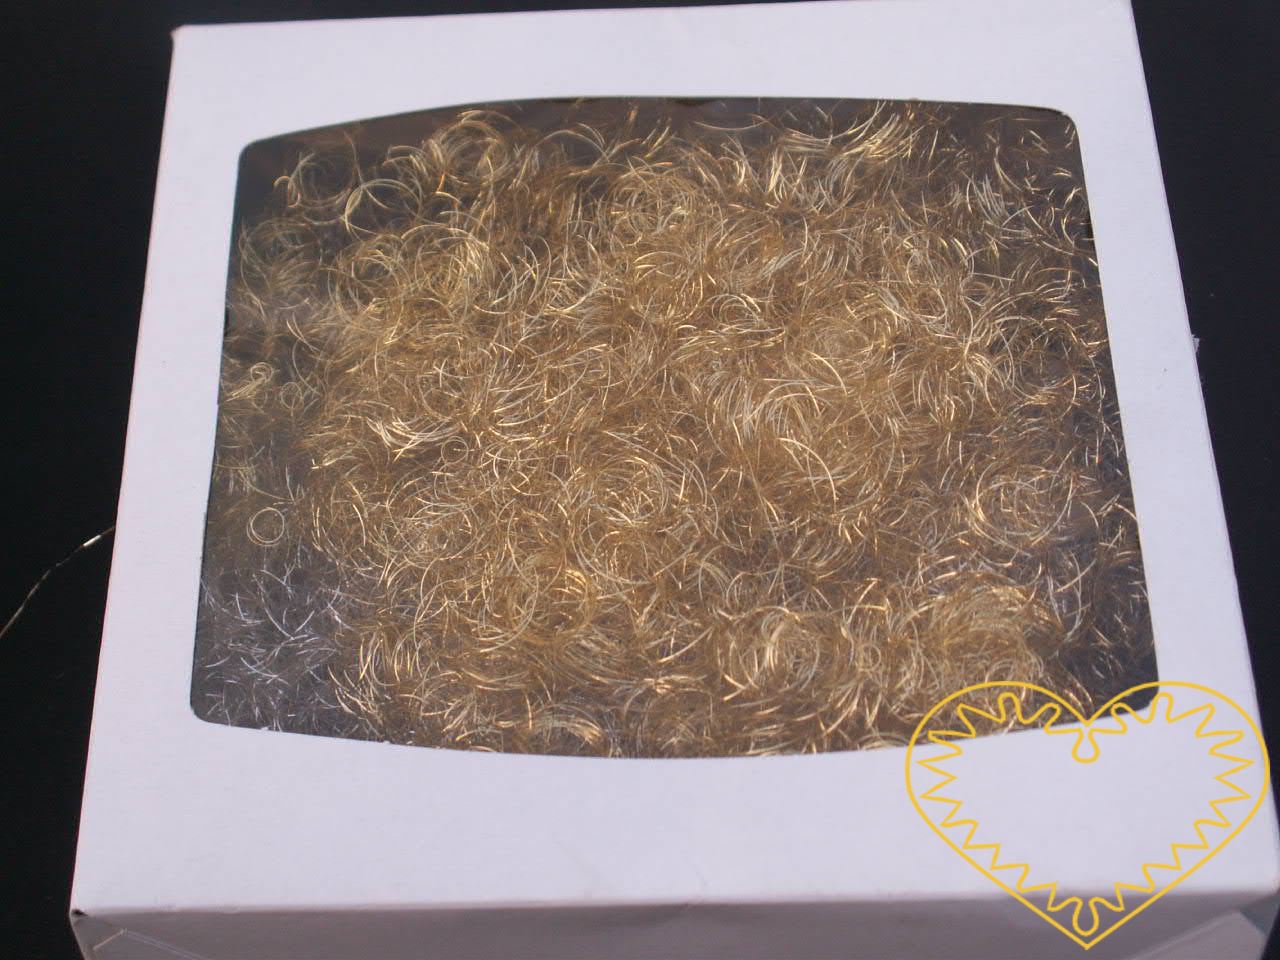 Andělské vlasy zlato - měď - baroko; velké balení 200 g. Andělské vlasy mají široké využití - uplatní se při aranžování, tvorbě nejrůznějších dekorací, ale např. i jako vlásky na figurku či maňáska.